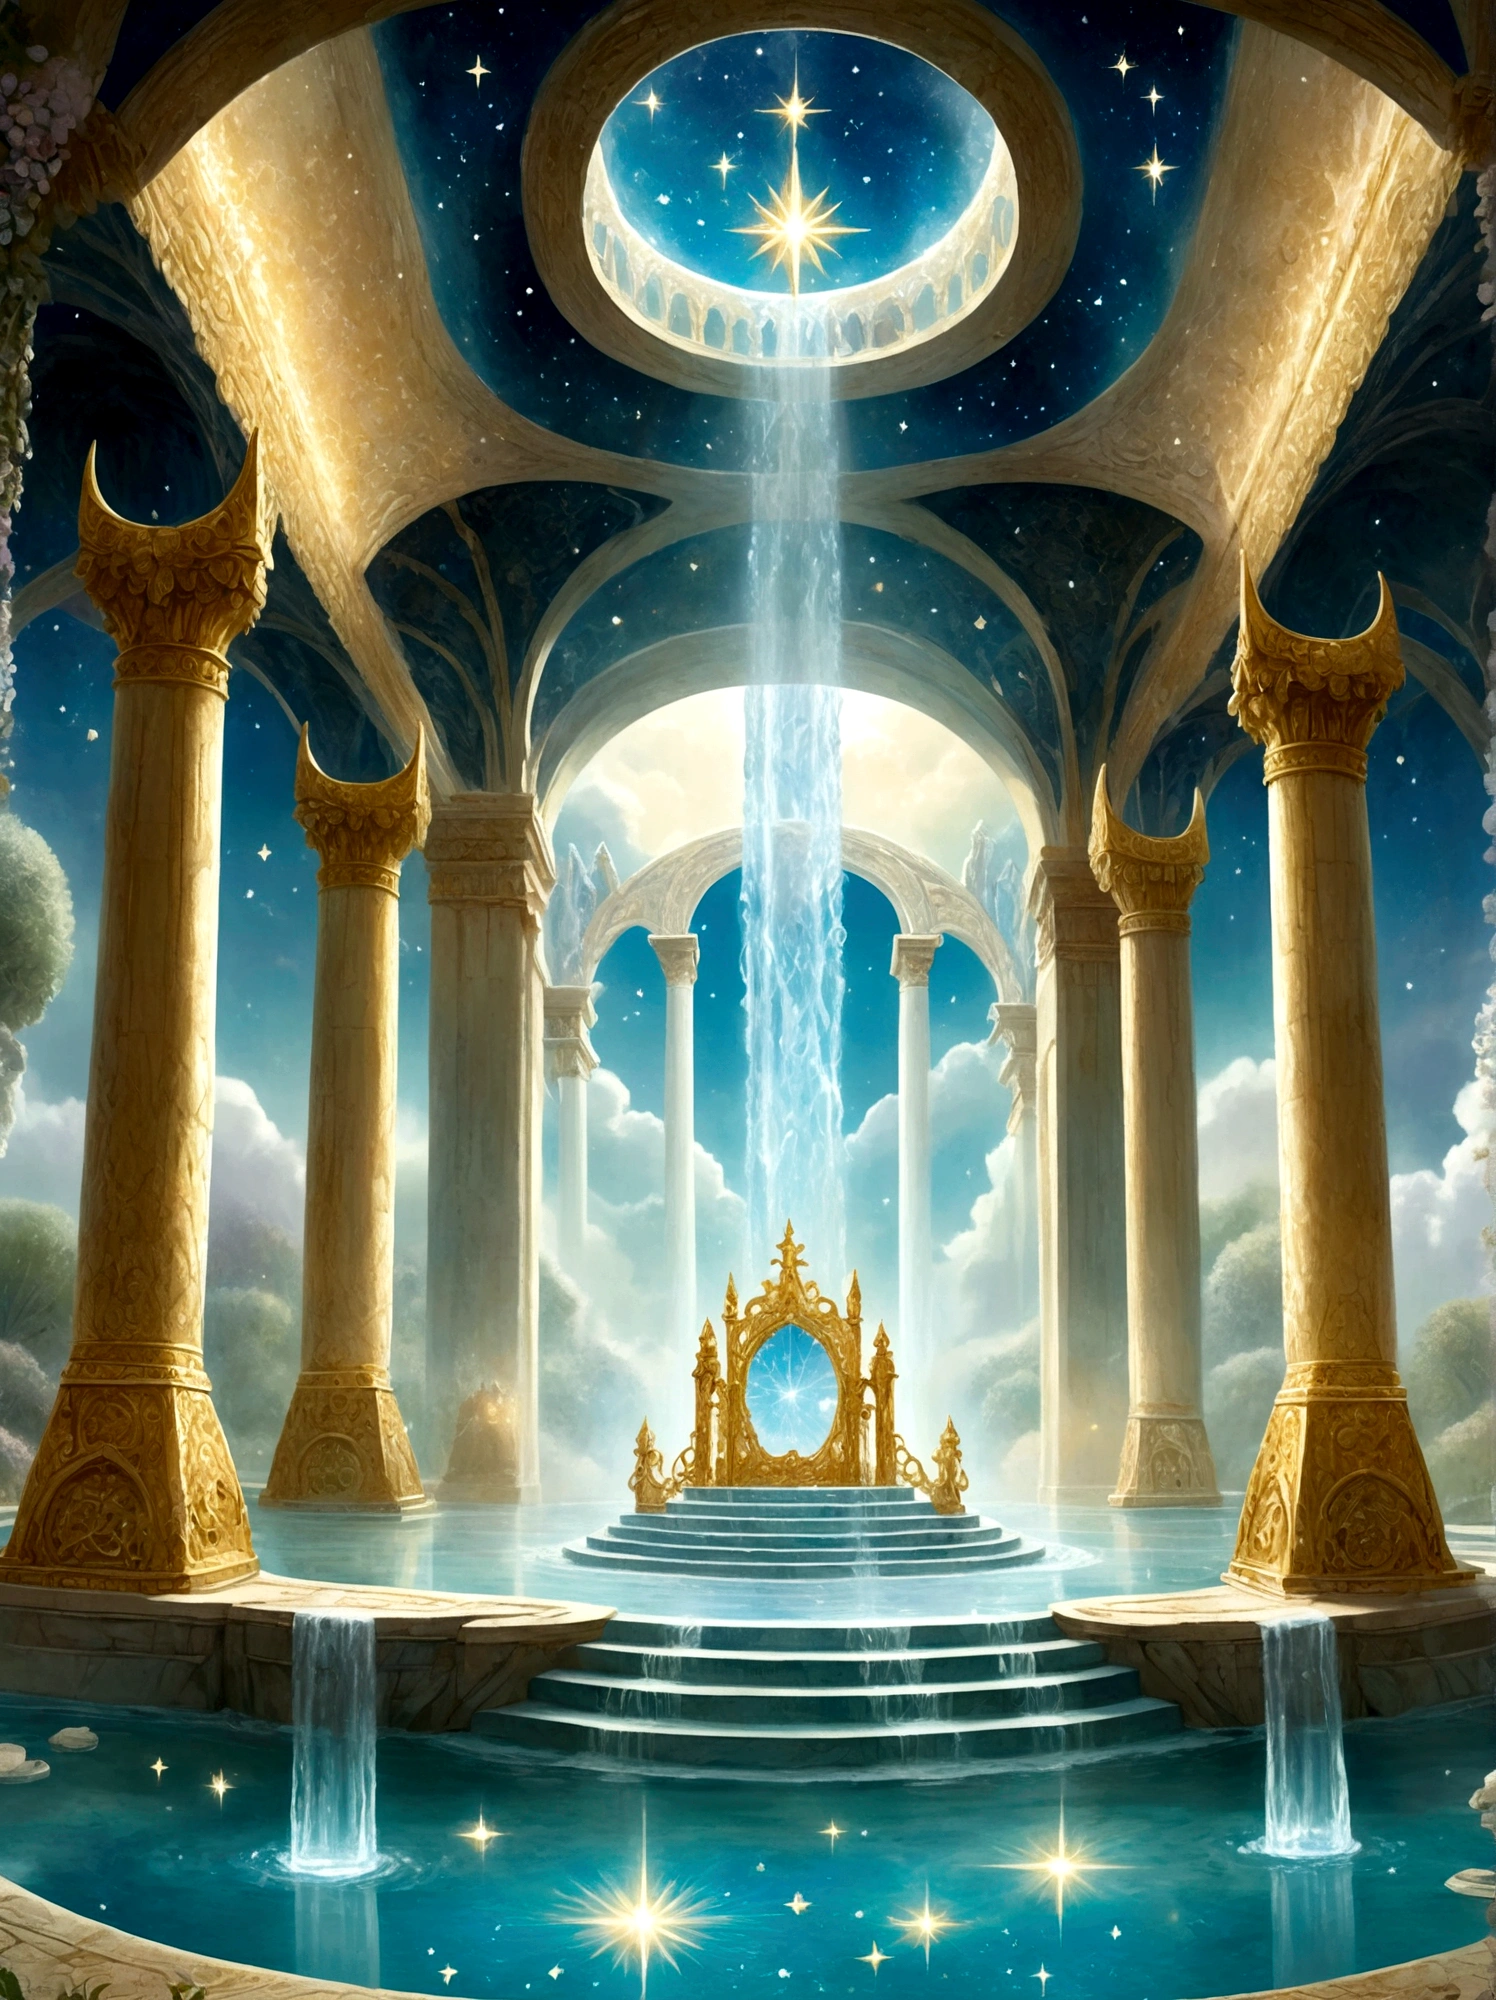 Представьте себе величественный тронный зал за пределами человеческого царства., как описано в первой книге Еноха, Комната наполнена величием, во главе которого стоит огромный трон, сделанный из чистого, мерцающий кристалл. Рядом с троном, вырываются четыре ручья воды, символизирующий четыре райские реки, Комната ярко освещена сияющим светом, и пол словно сияет, прозрачный кристалл, В комнату ведут красиво резные жемчужные ворота., в то время как мириады звезд мерцают высоко над сводами, небесный потолок, Мягкий, эфирный туман пронизывает воздух, дальнейшее усиление мистической атмосферы